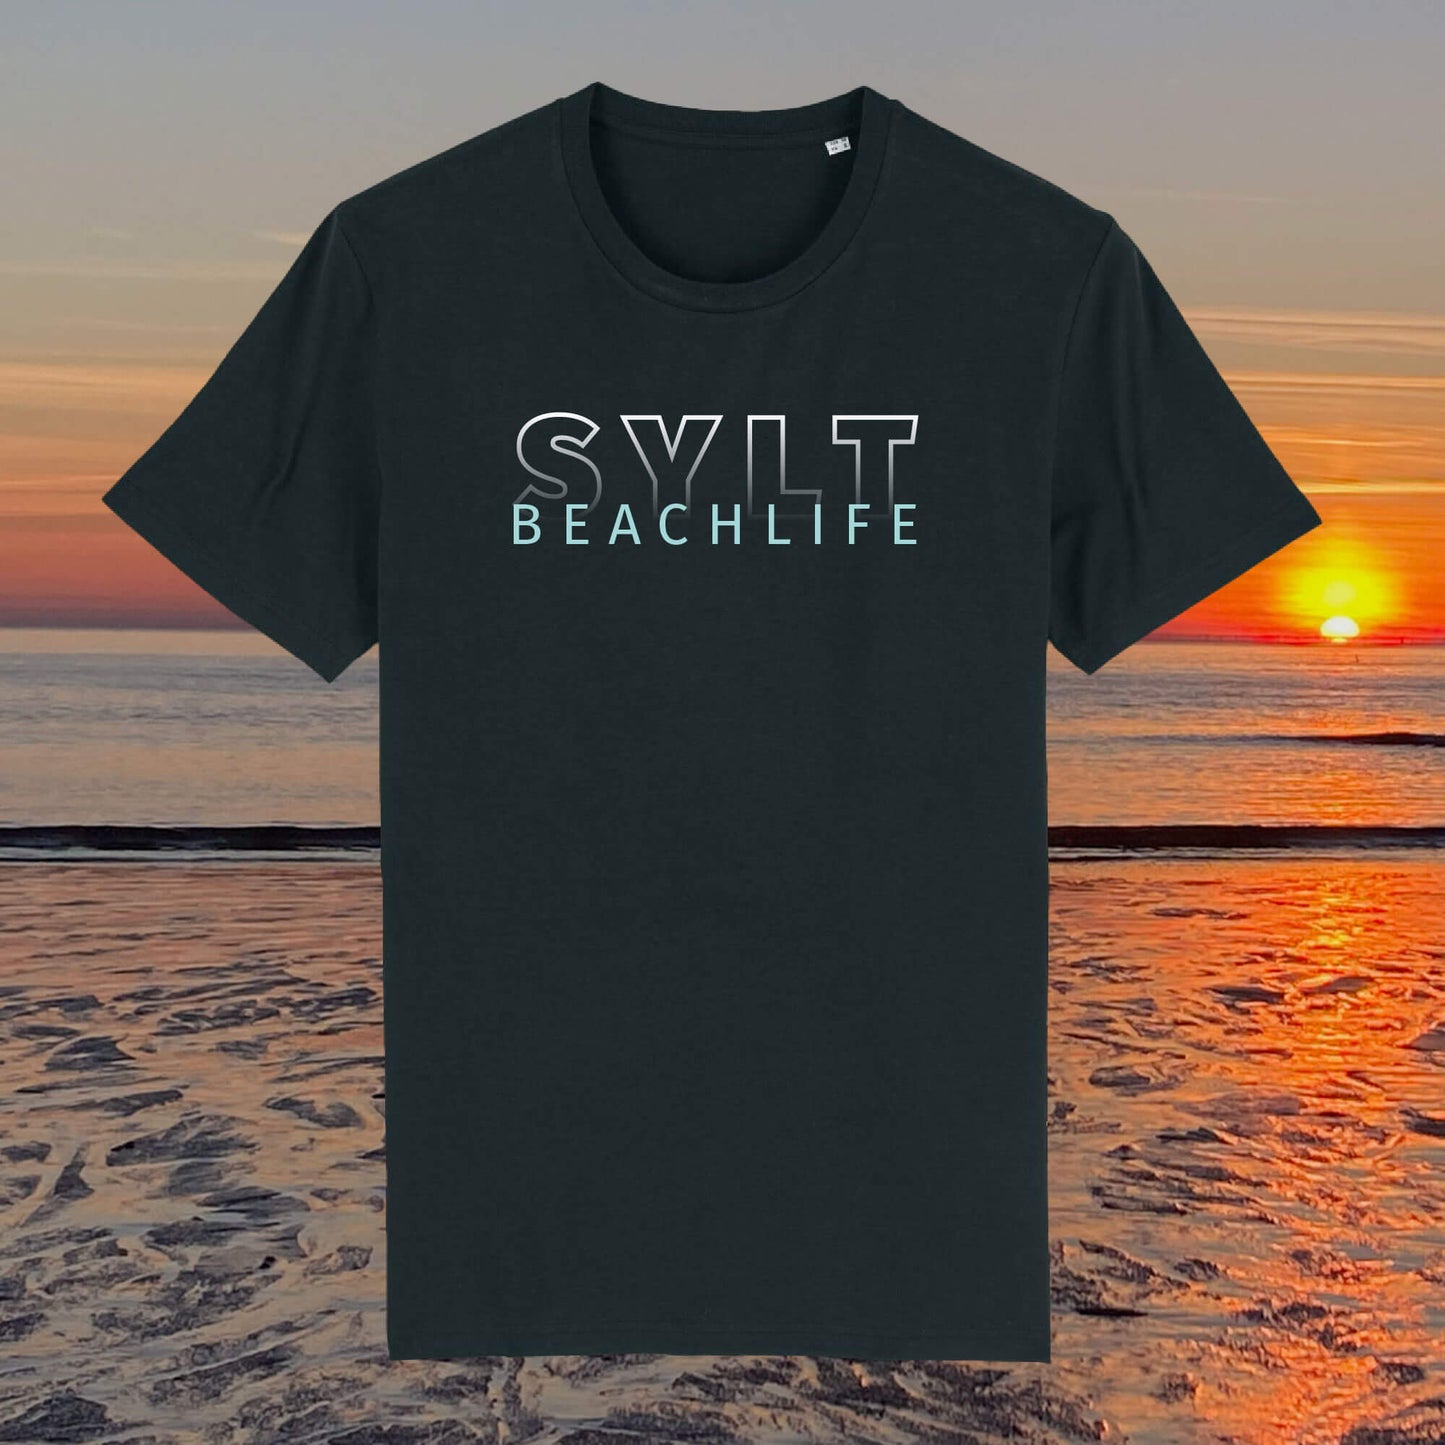 Sylt T-Shirt in schwarz mit Aufdruck Sylt Beachlife auf der Brust